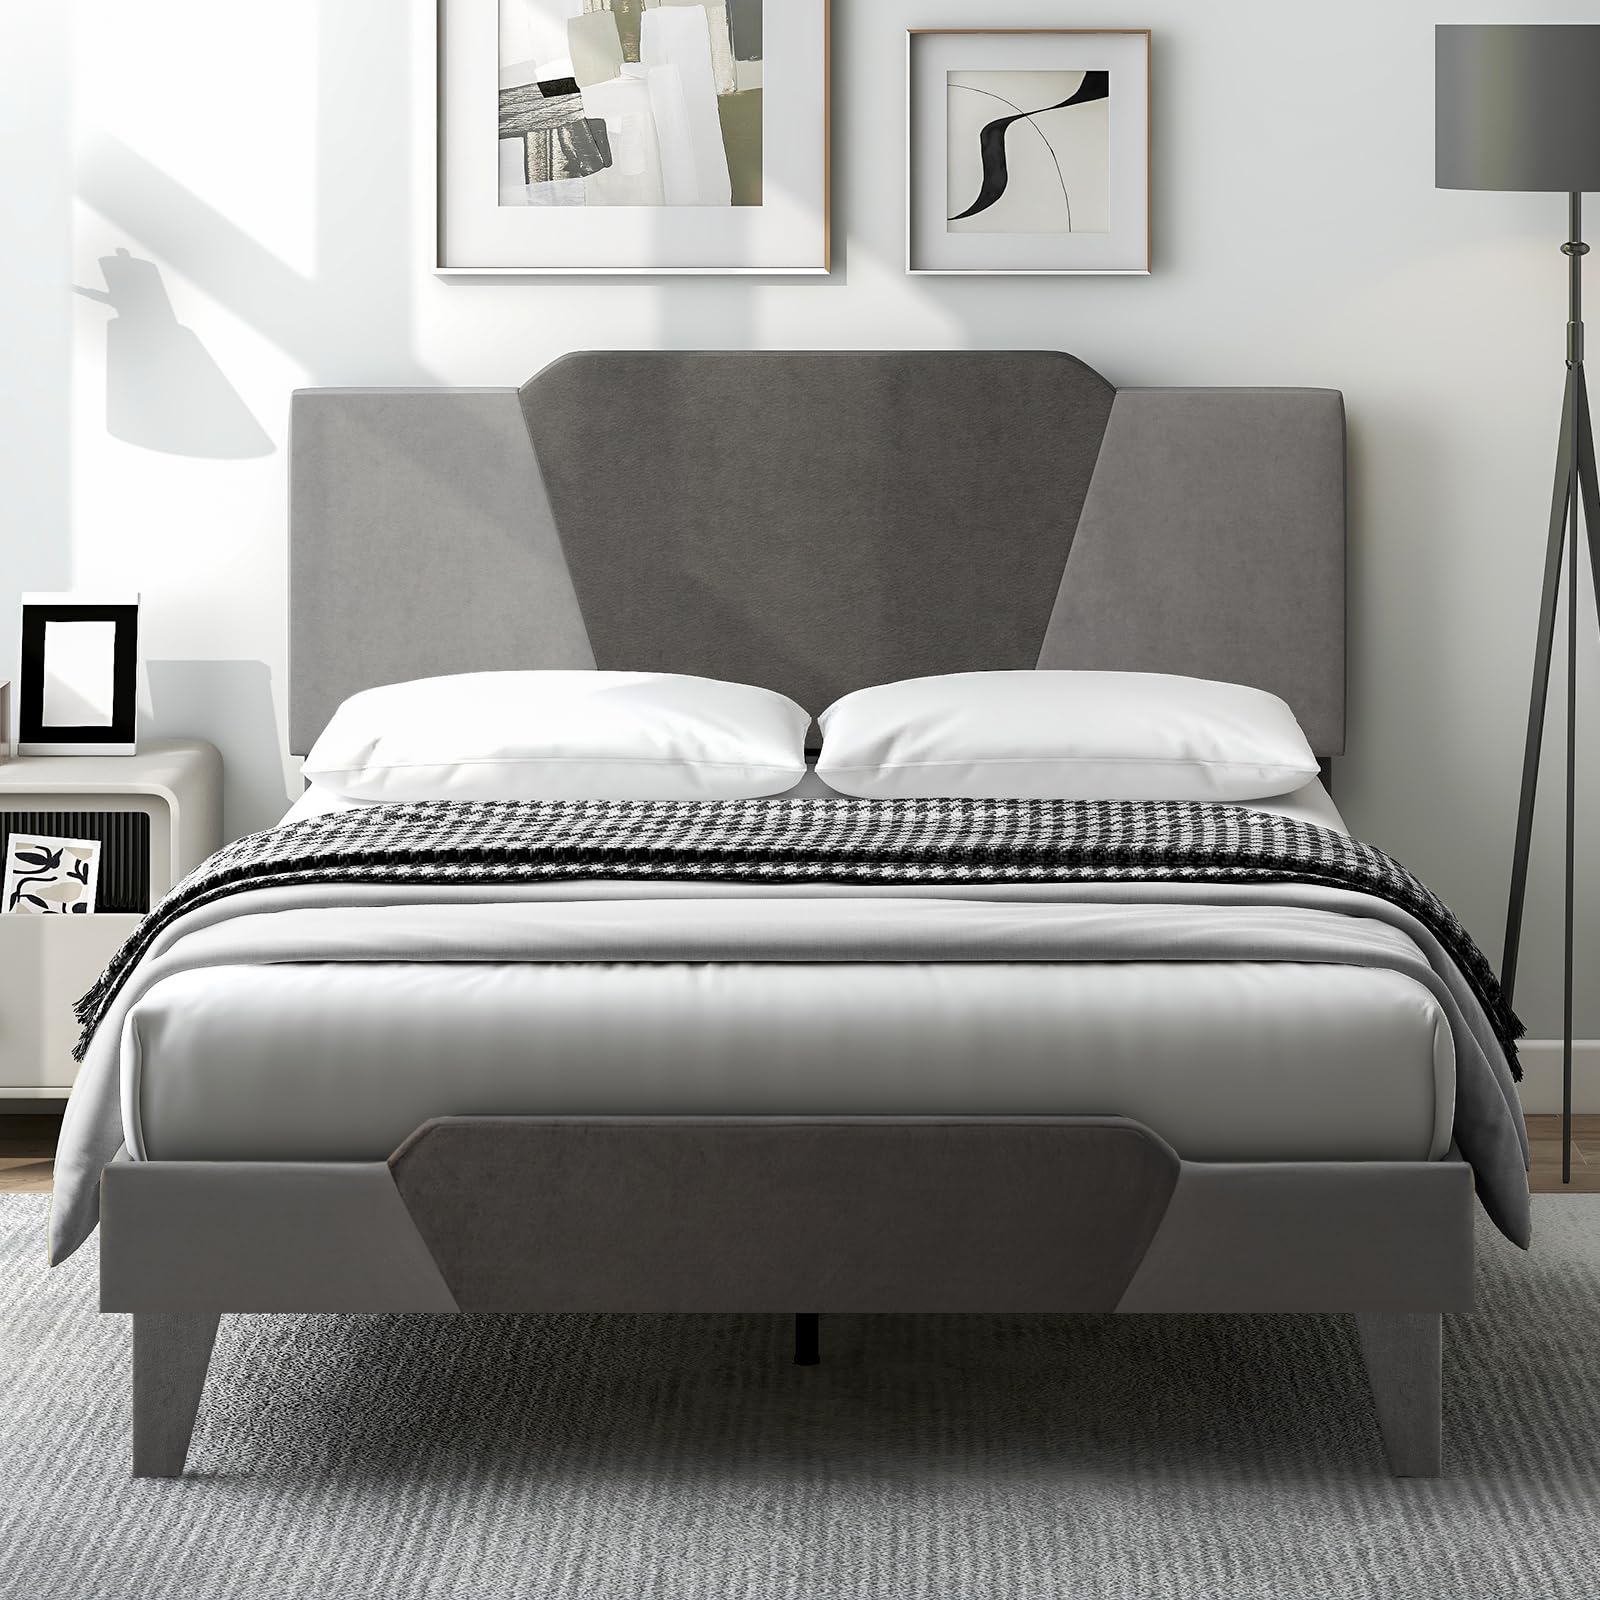 Giantex Velvet Upholstered Bed Frame with Headboard